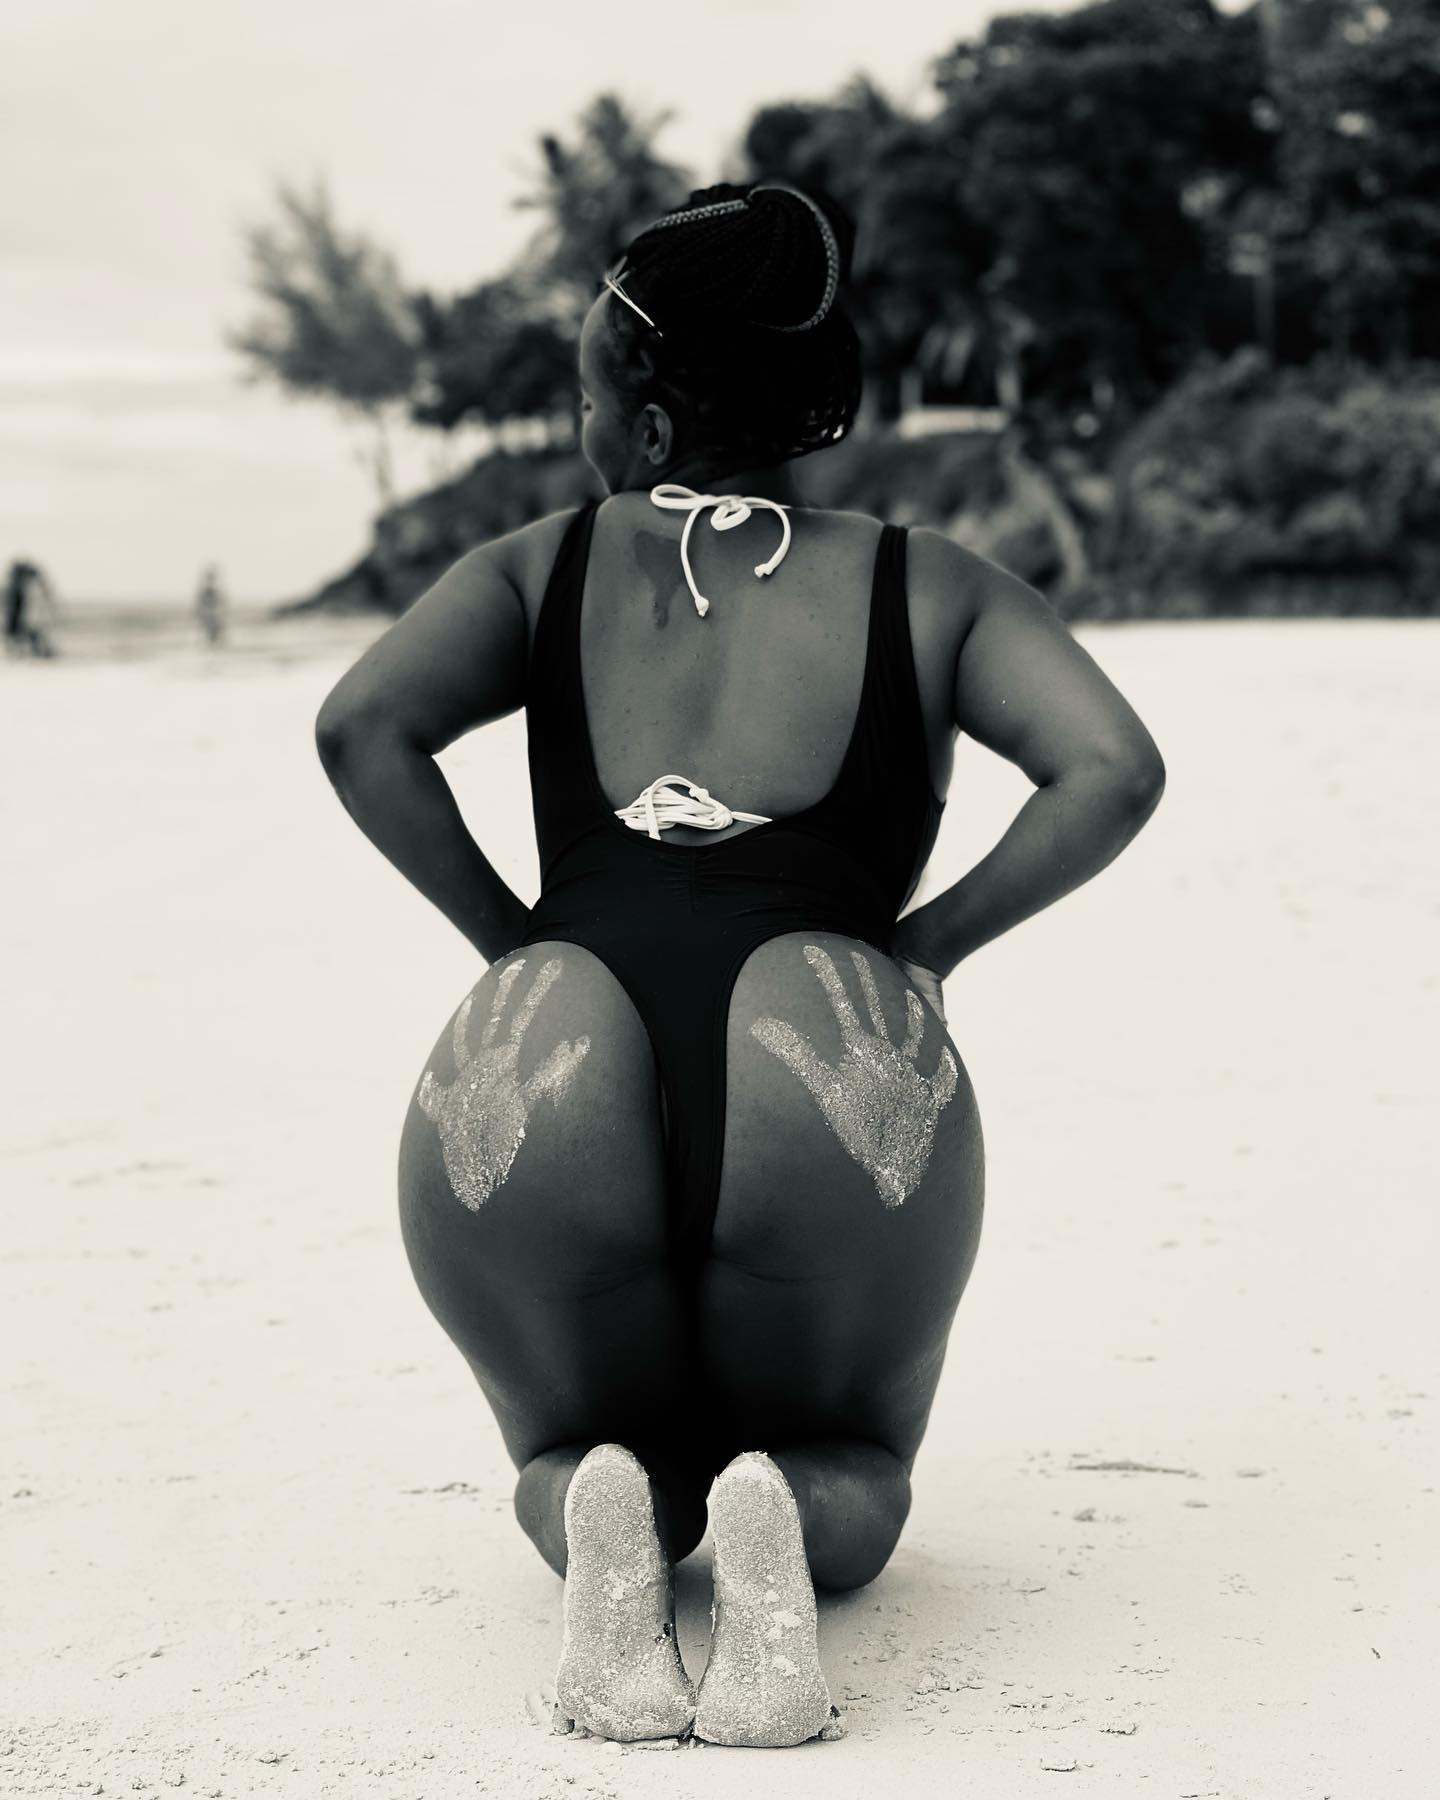 Idah Alisha shows off her booty